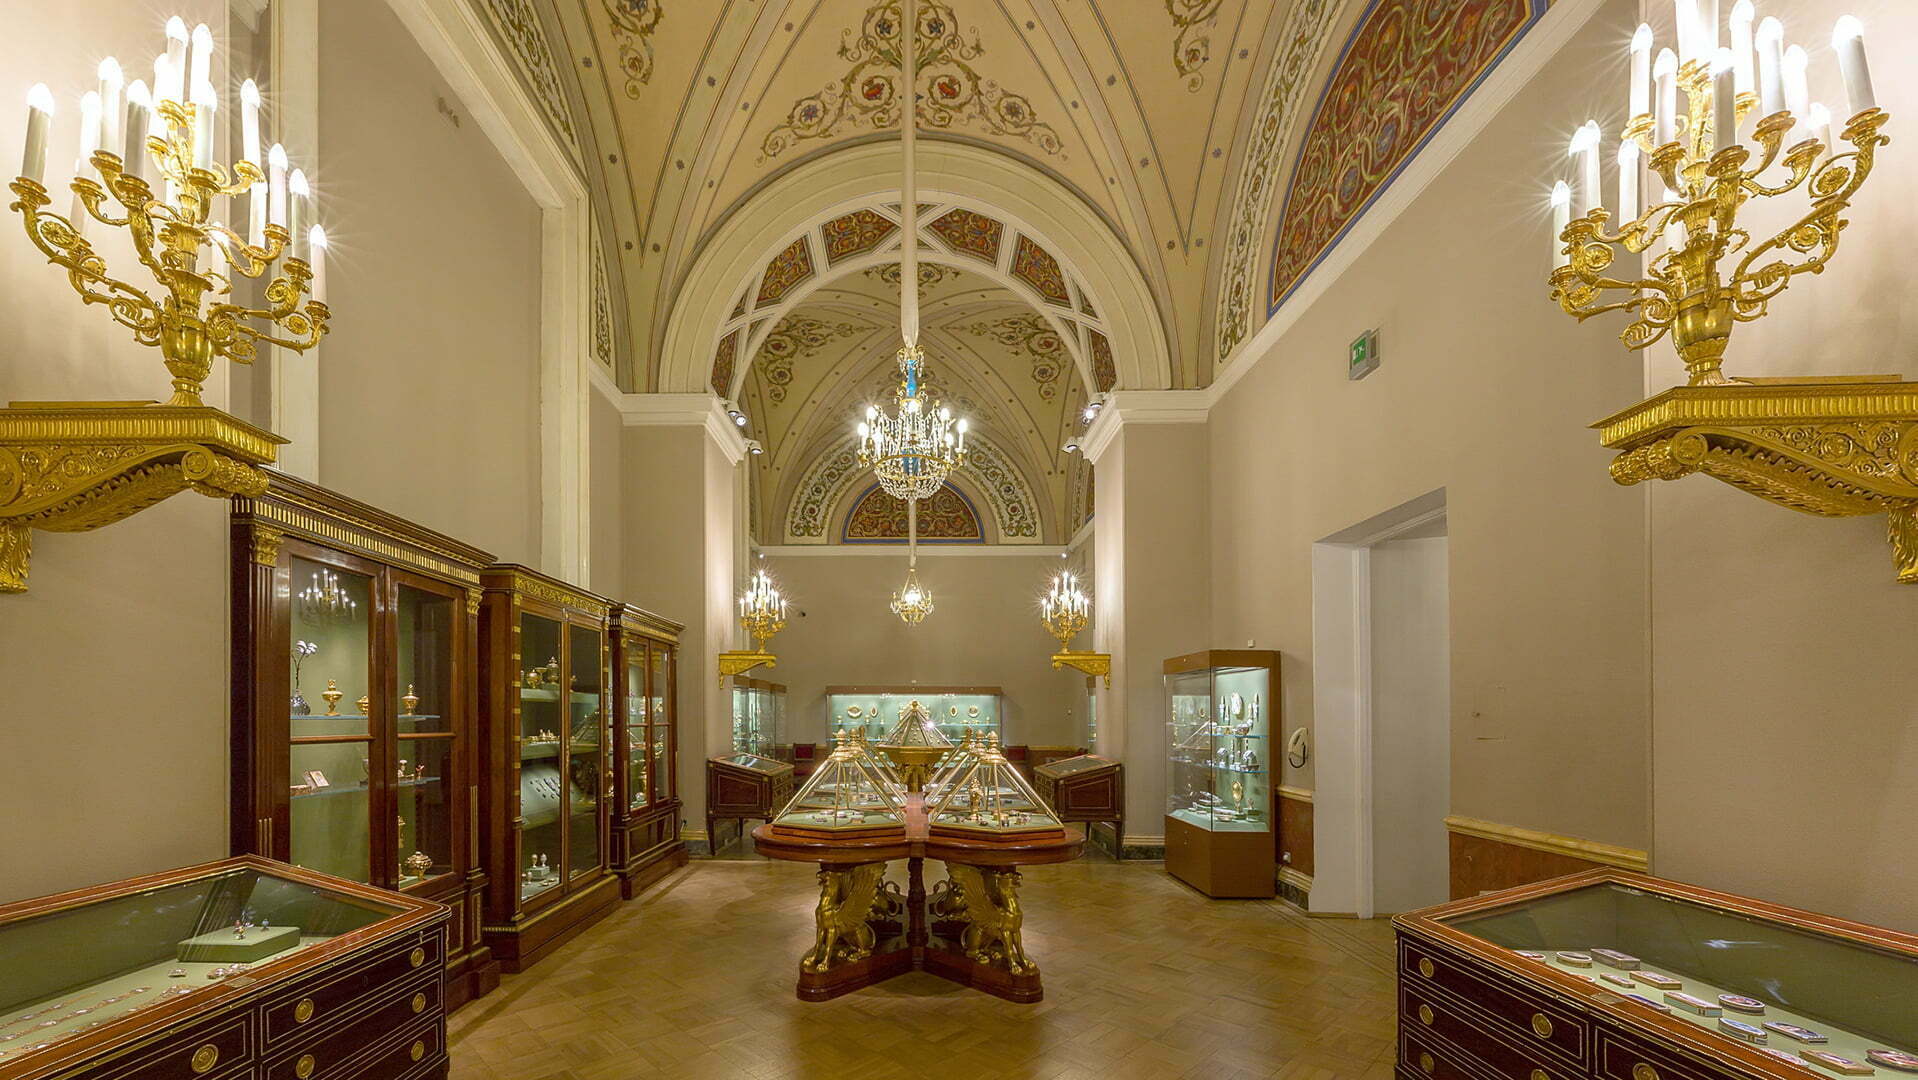 Общий вид залов, ювелирное искусство XIX века